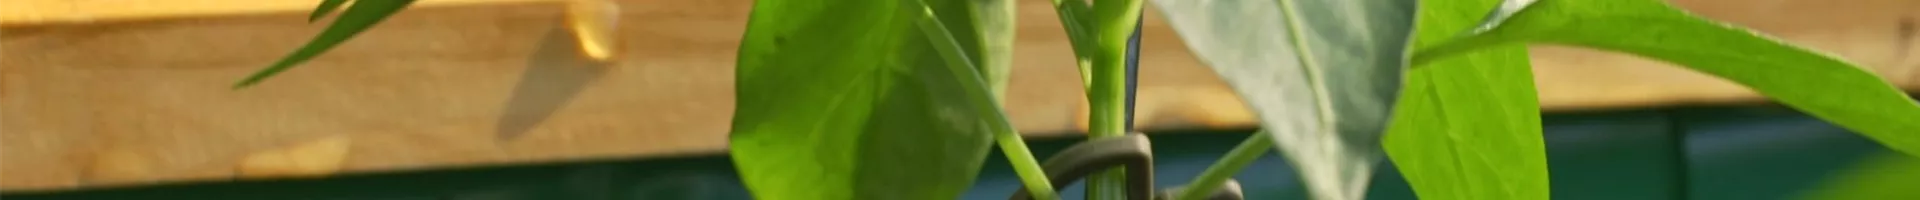 Gemüse-Paprika - Einpflanzen im Hochbeet (Thumbnail).jpg